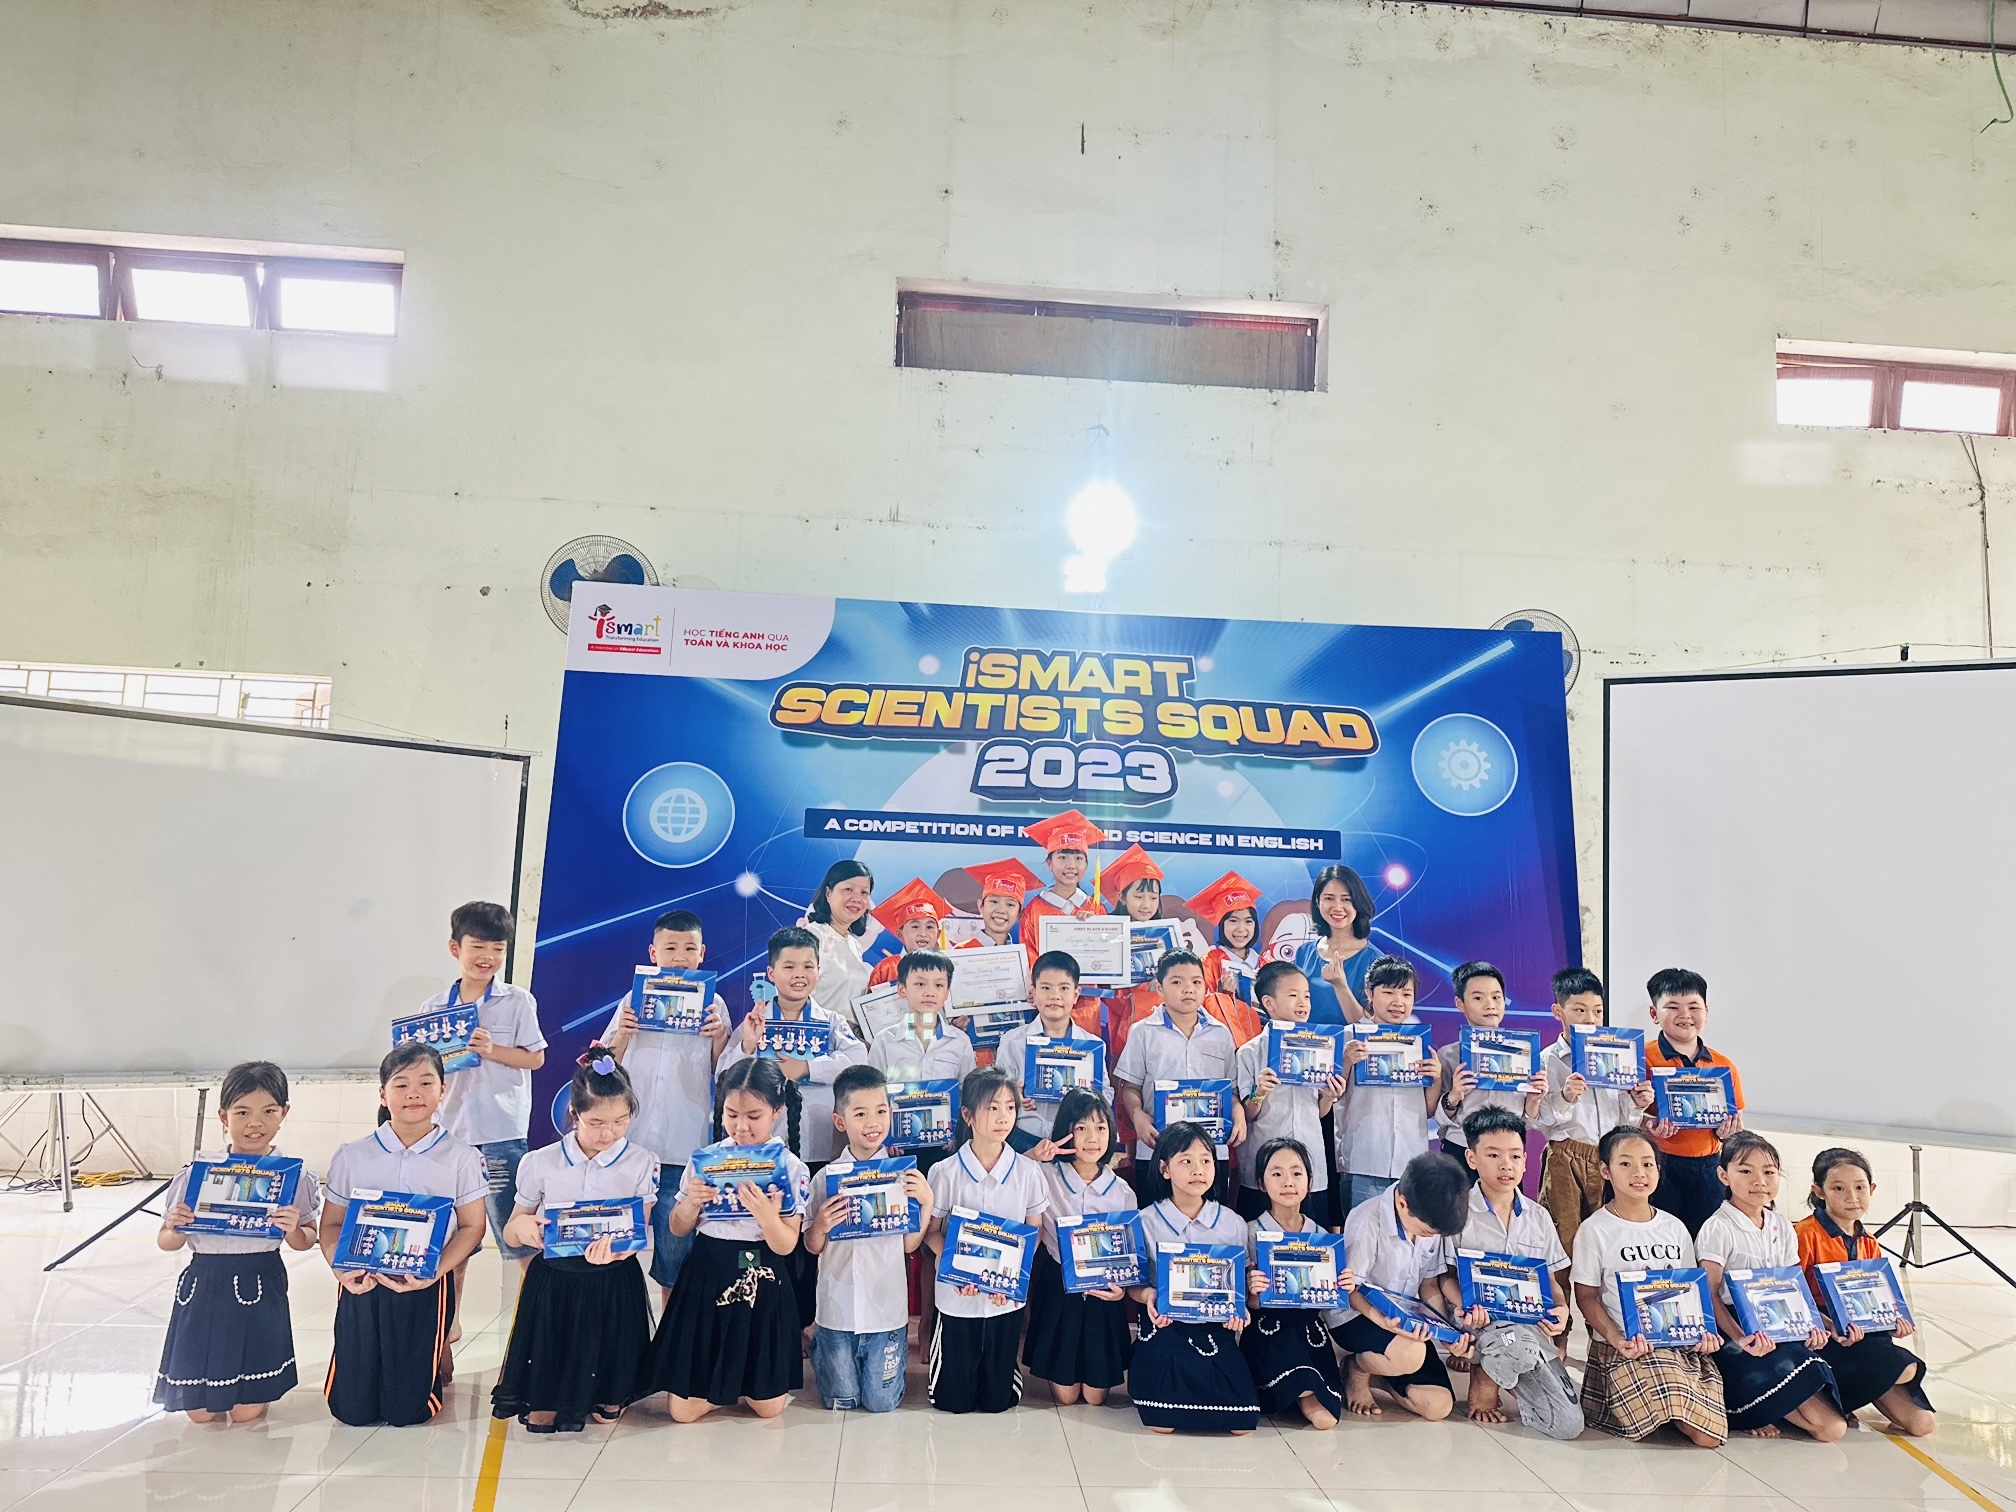 Giải đấu iSMART Scientists Squad dành cho khối 1,2 đã diễn ra tại trường Tiểu học Vân Canh.